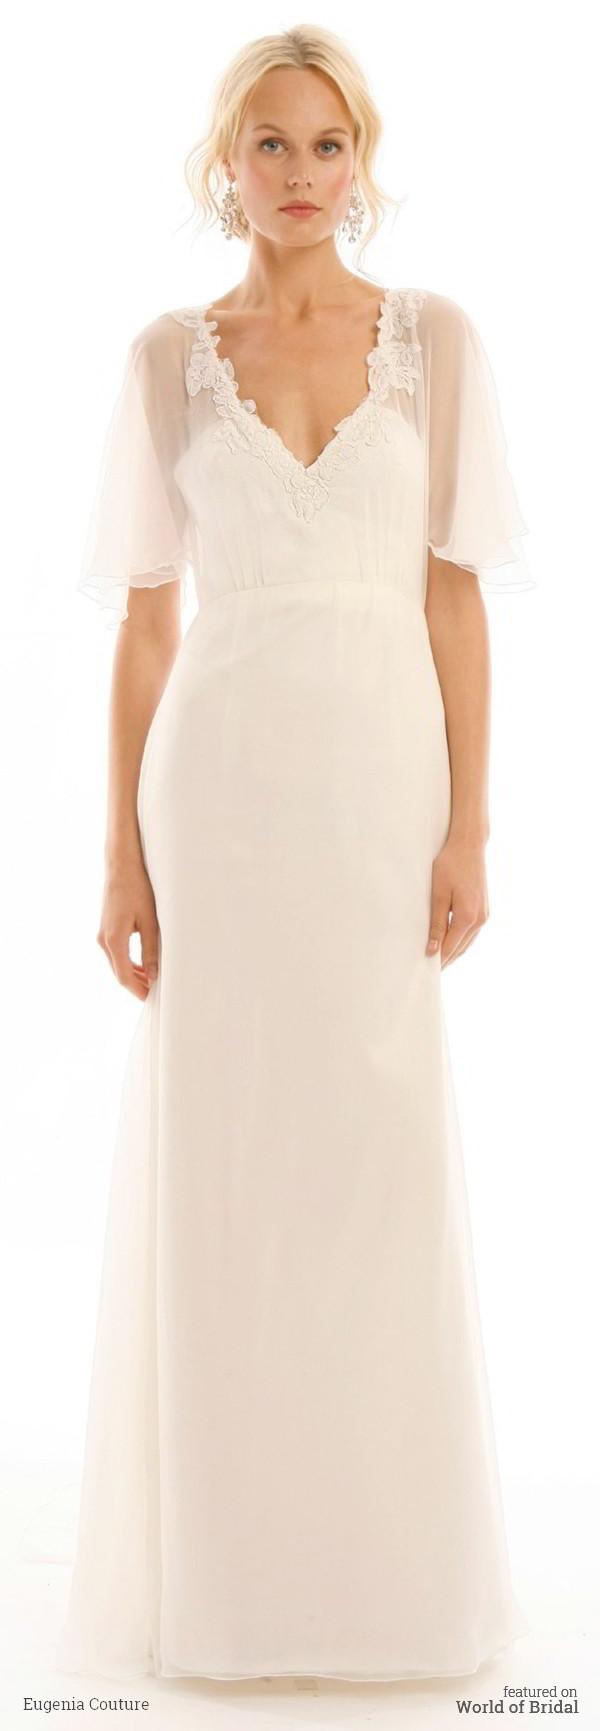 زفاف - Eugenia Couture 2016 Wedding Dresses